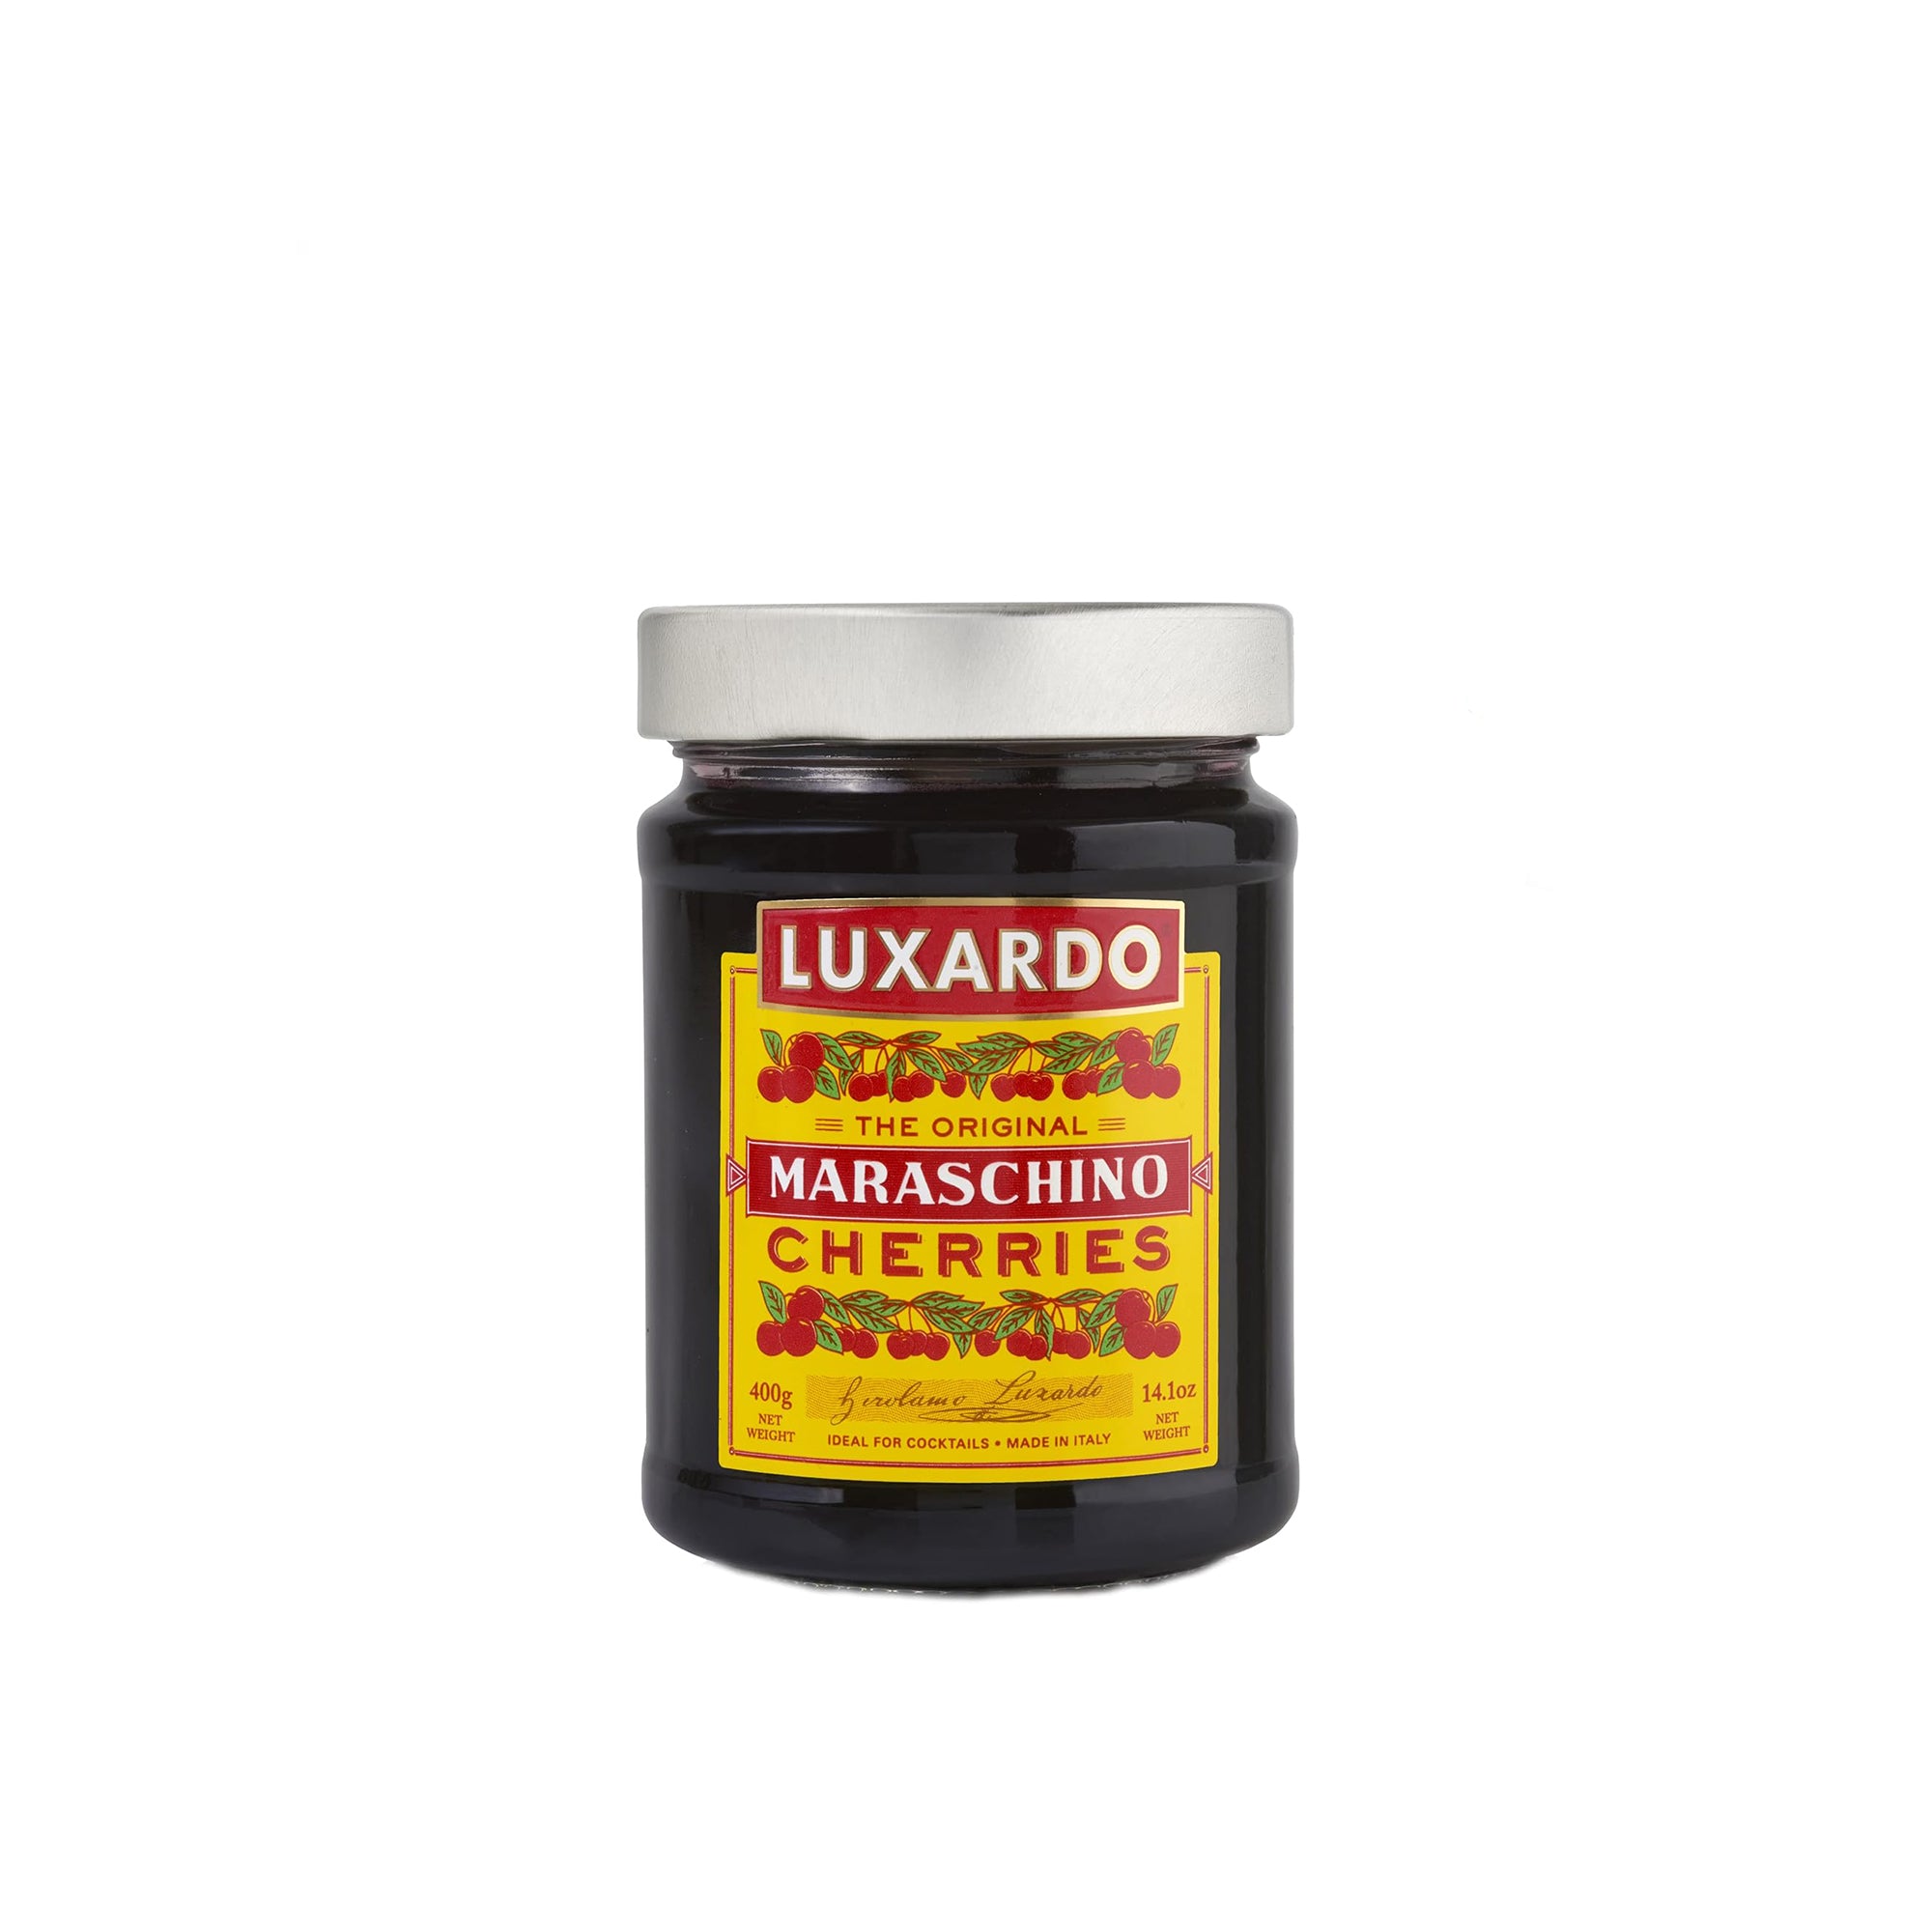 Luxardo Maraschino Cherries, 400 g